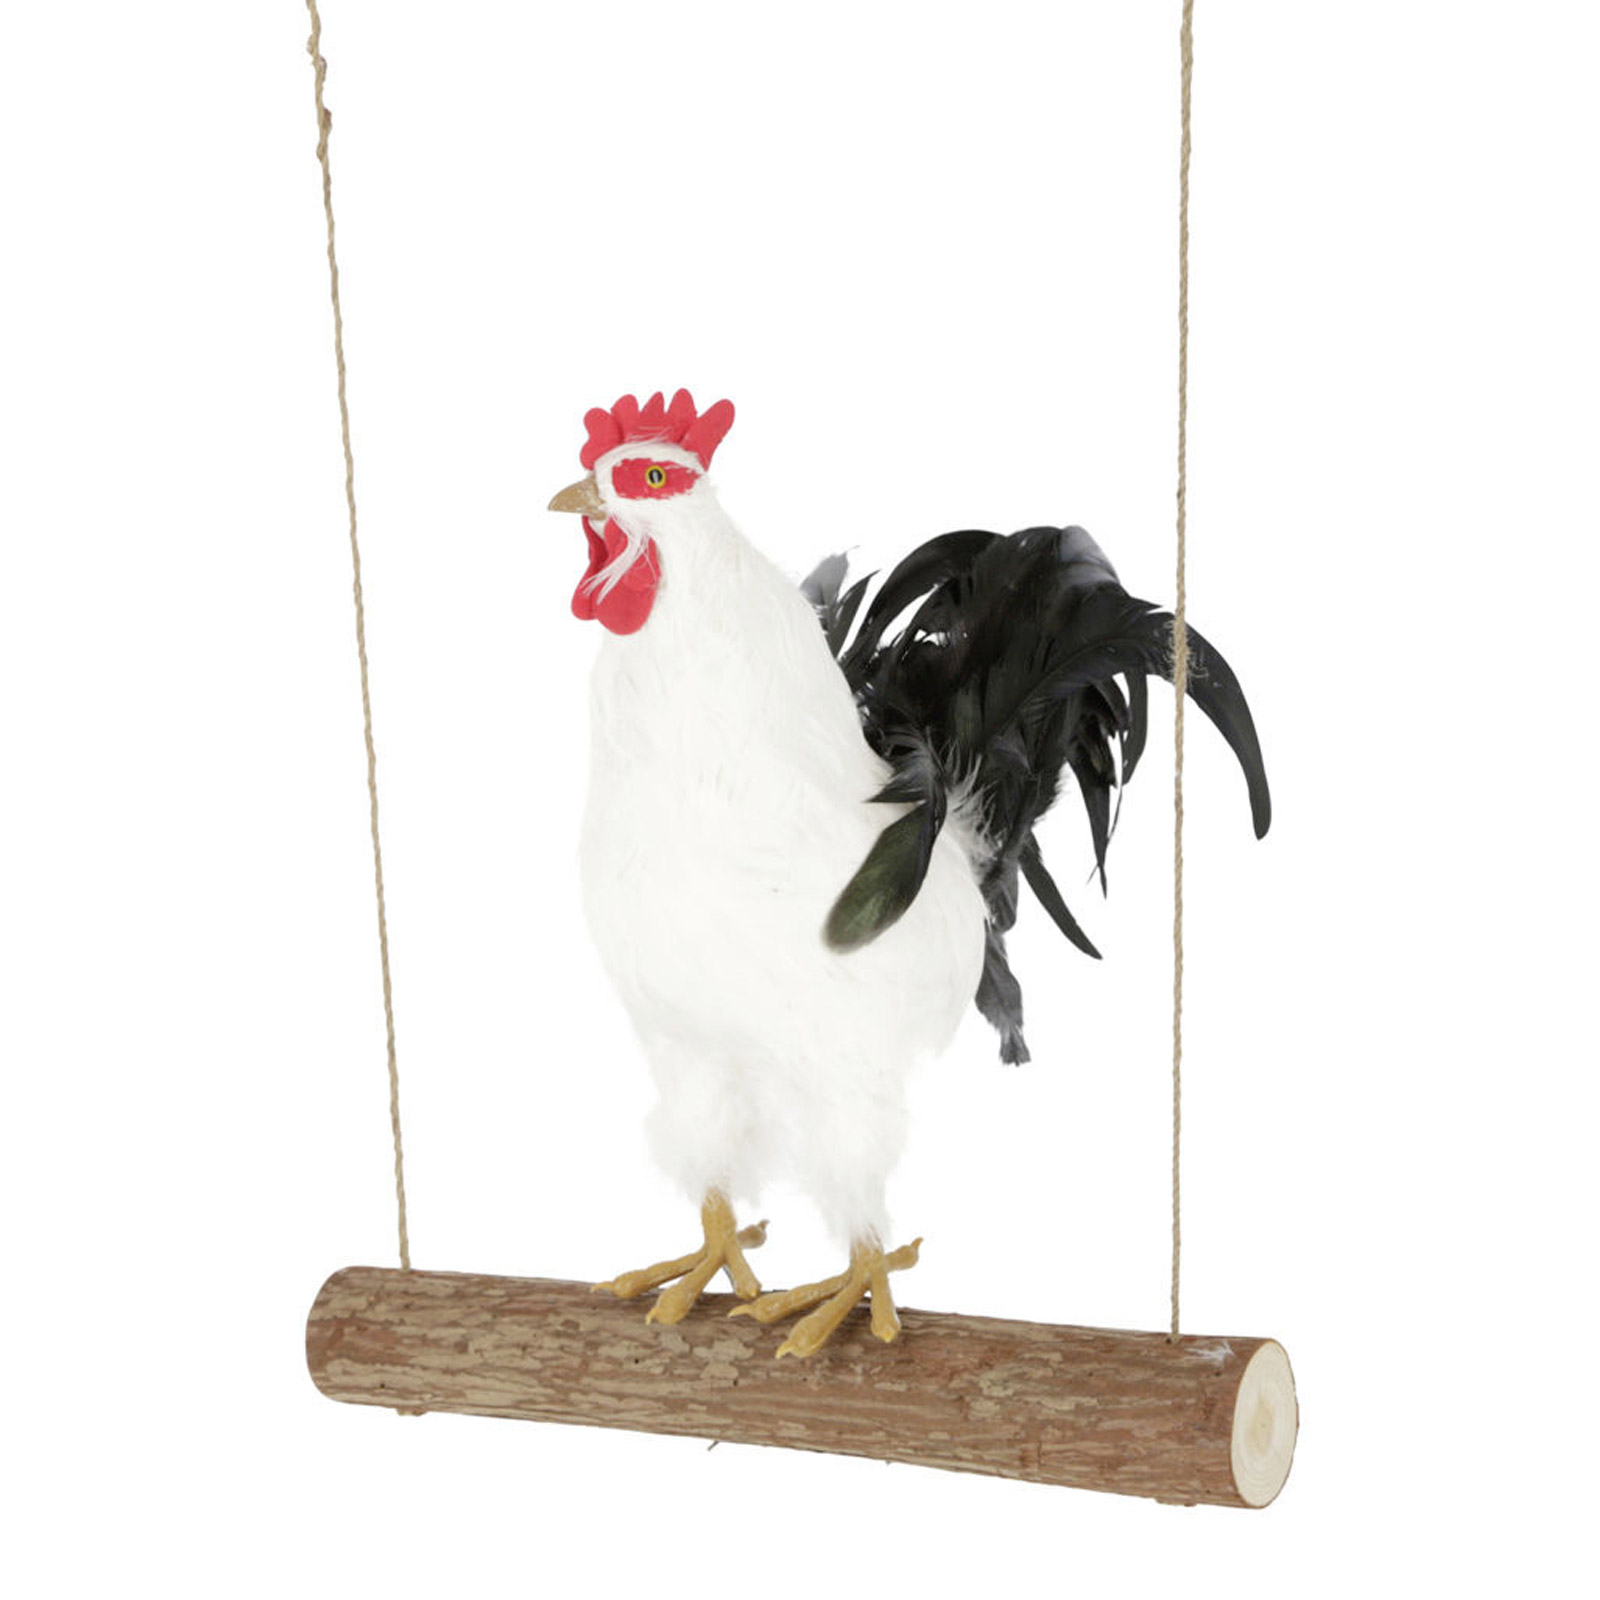 Chicken swing